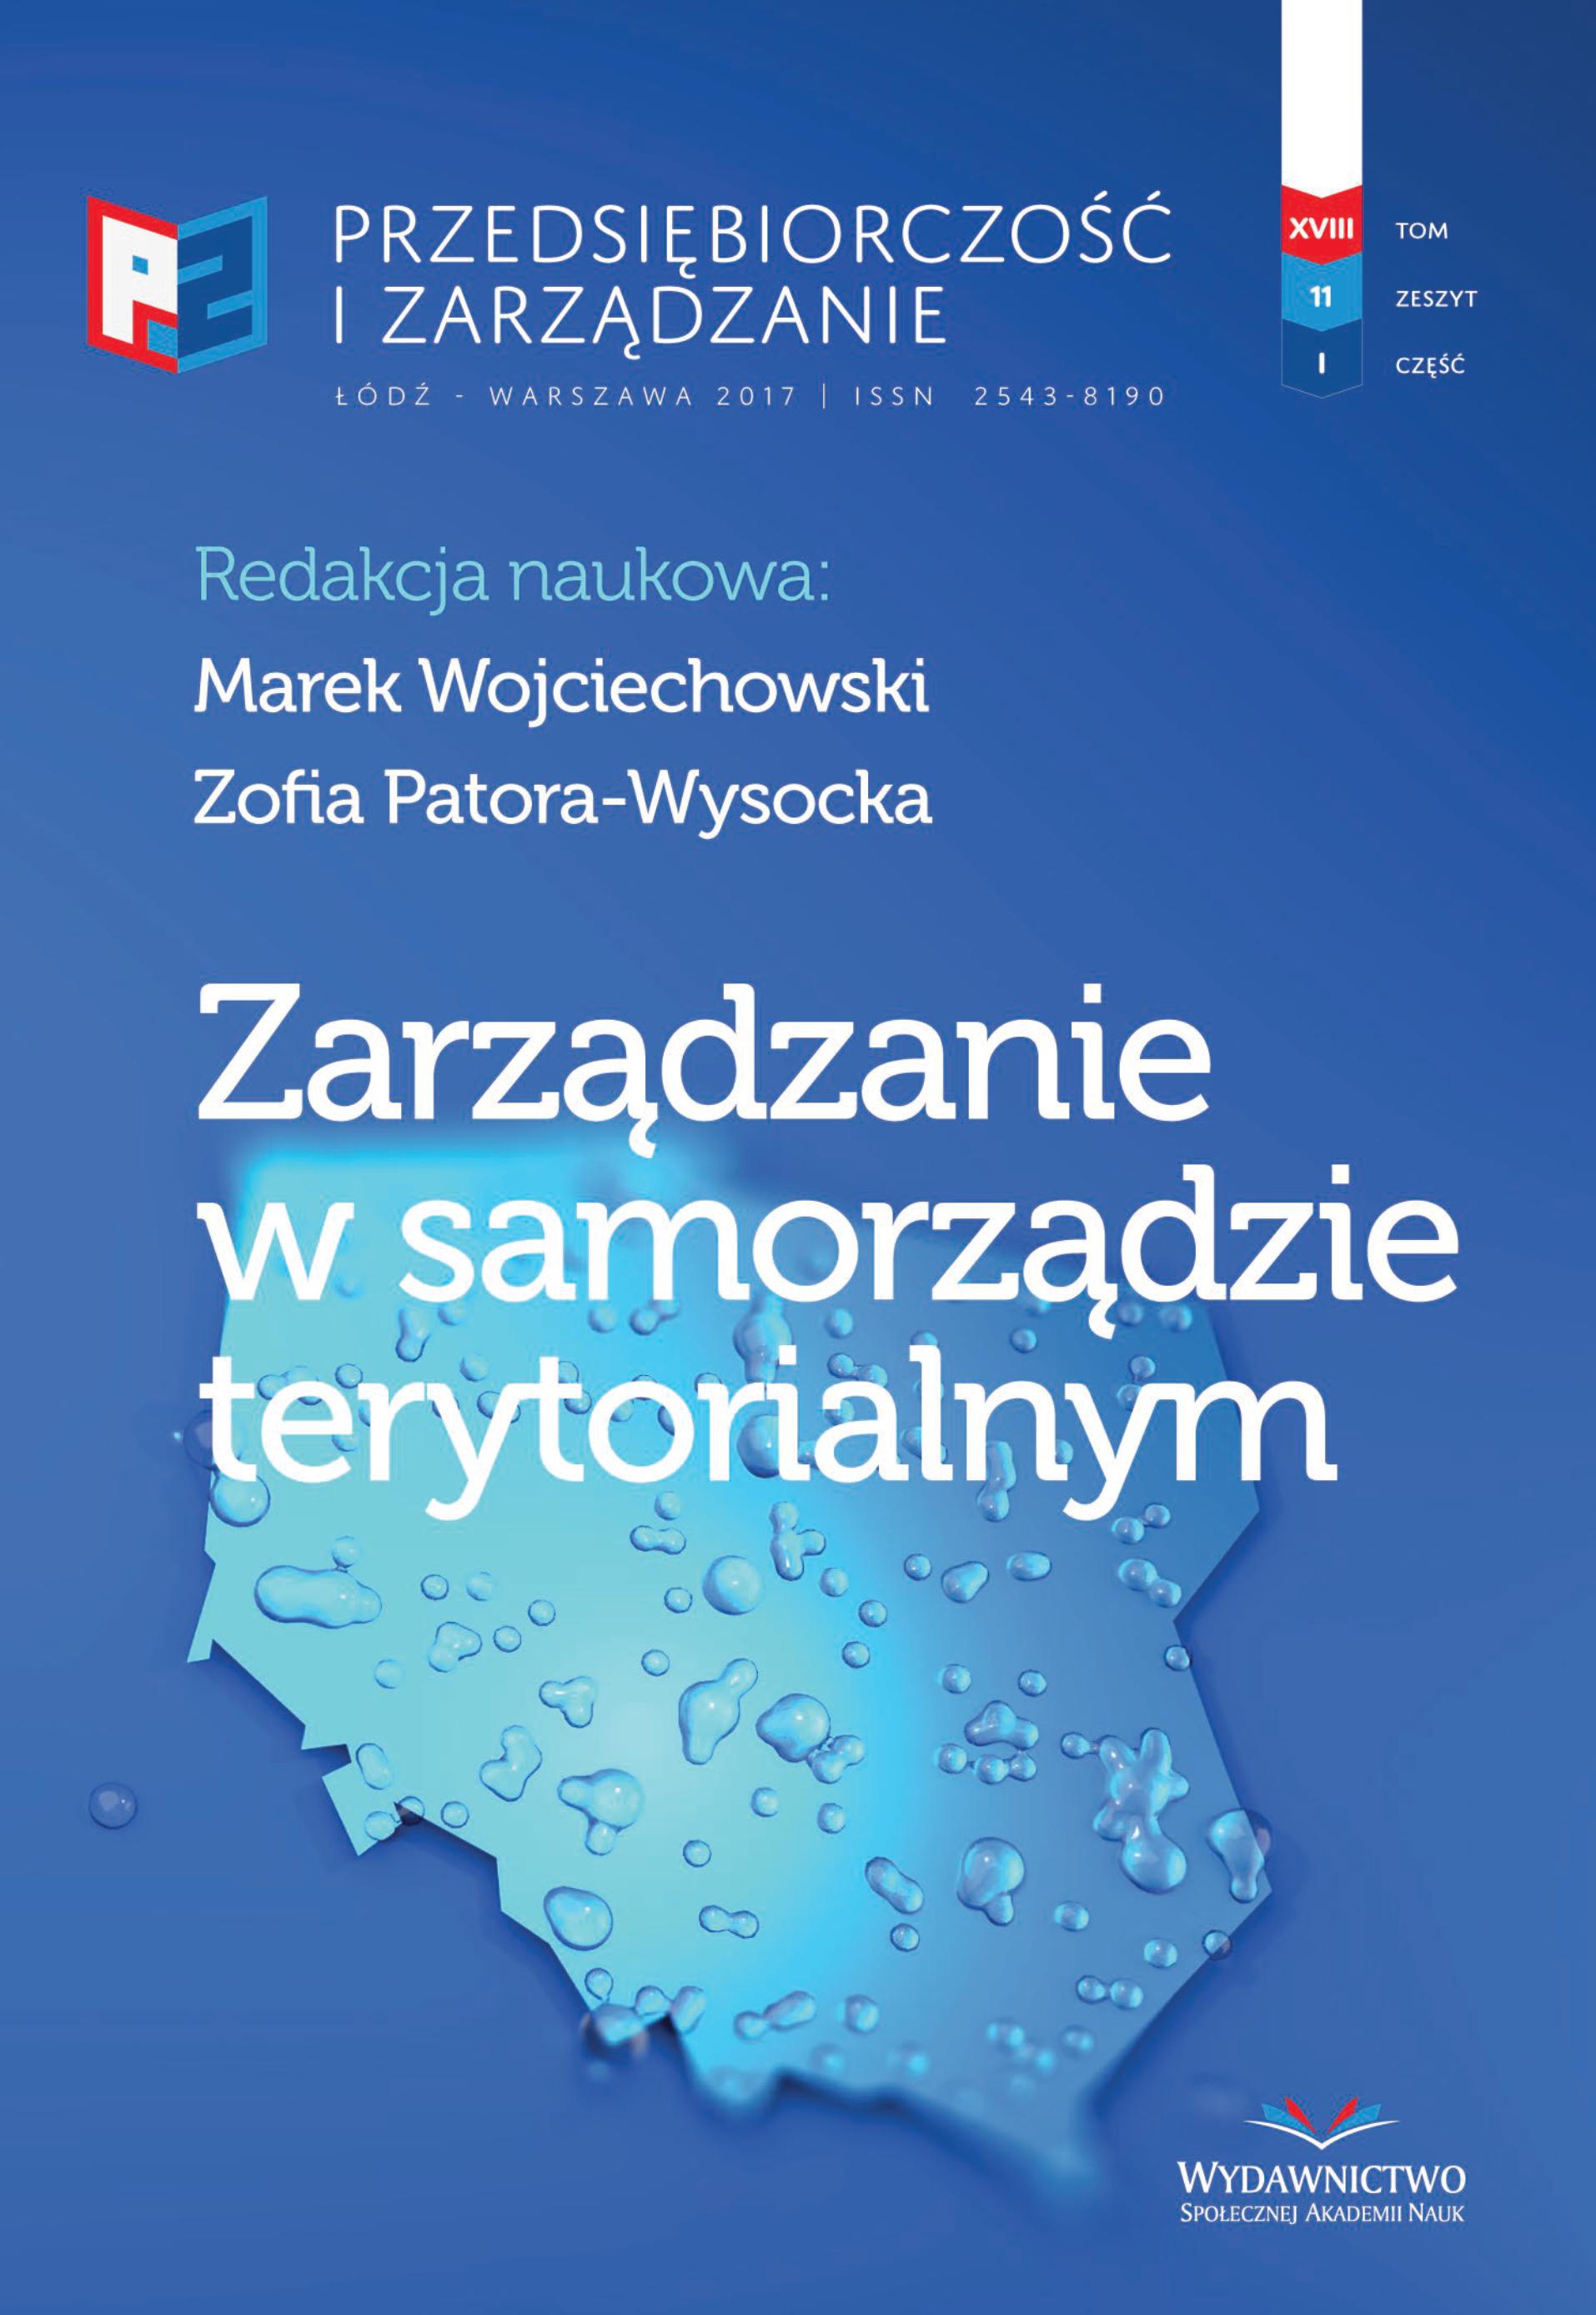 Polityczno-ekonomiczne determinanty zarządzania
w polskim samorządzie terytorialnym